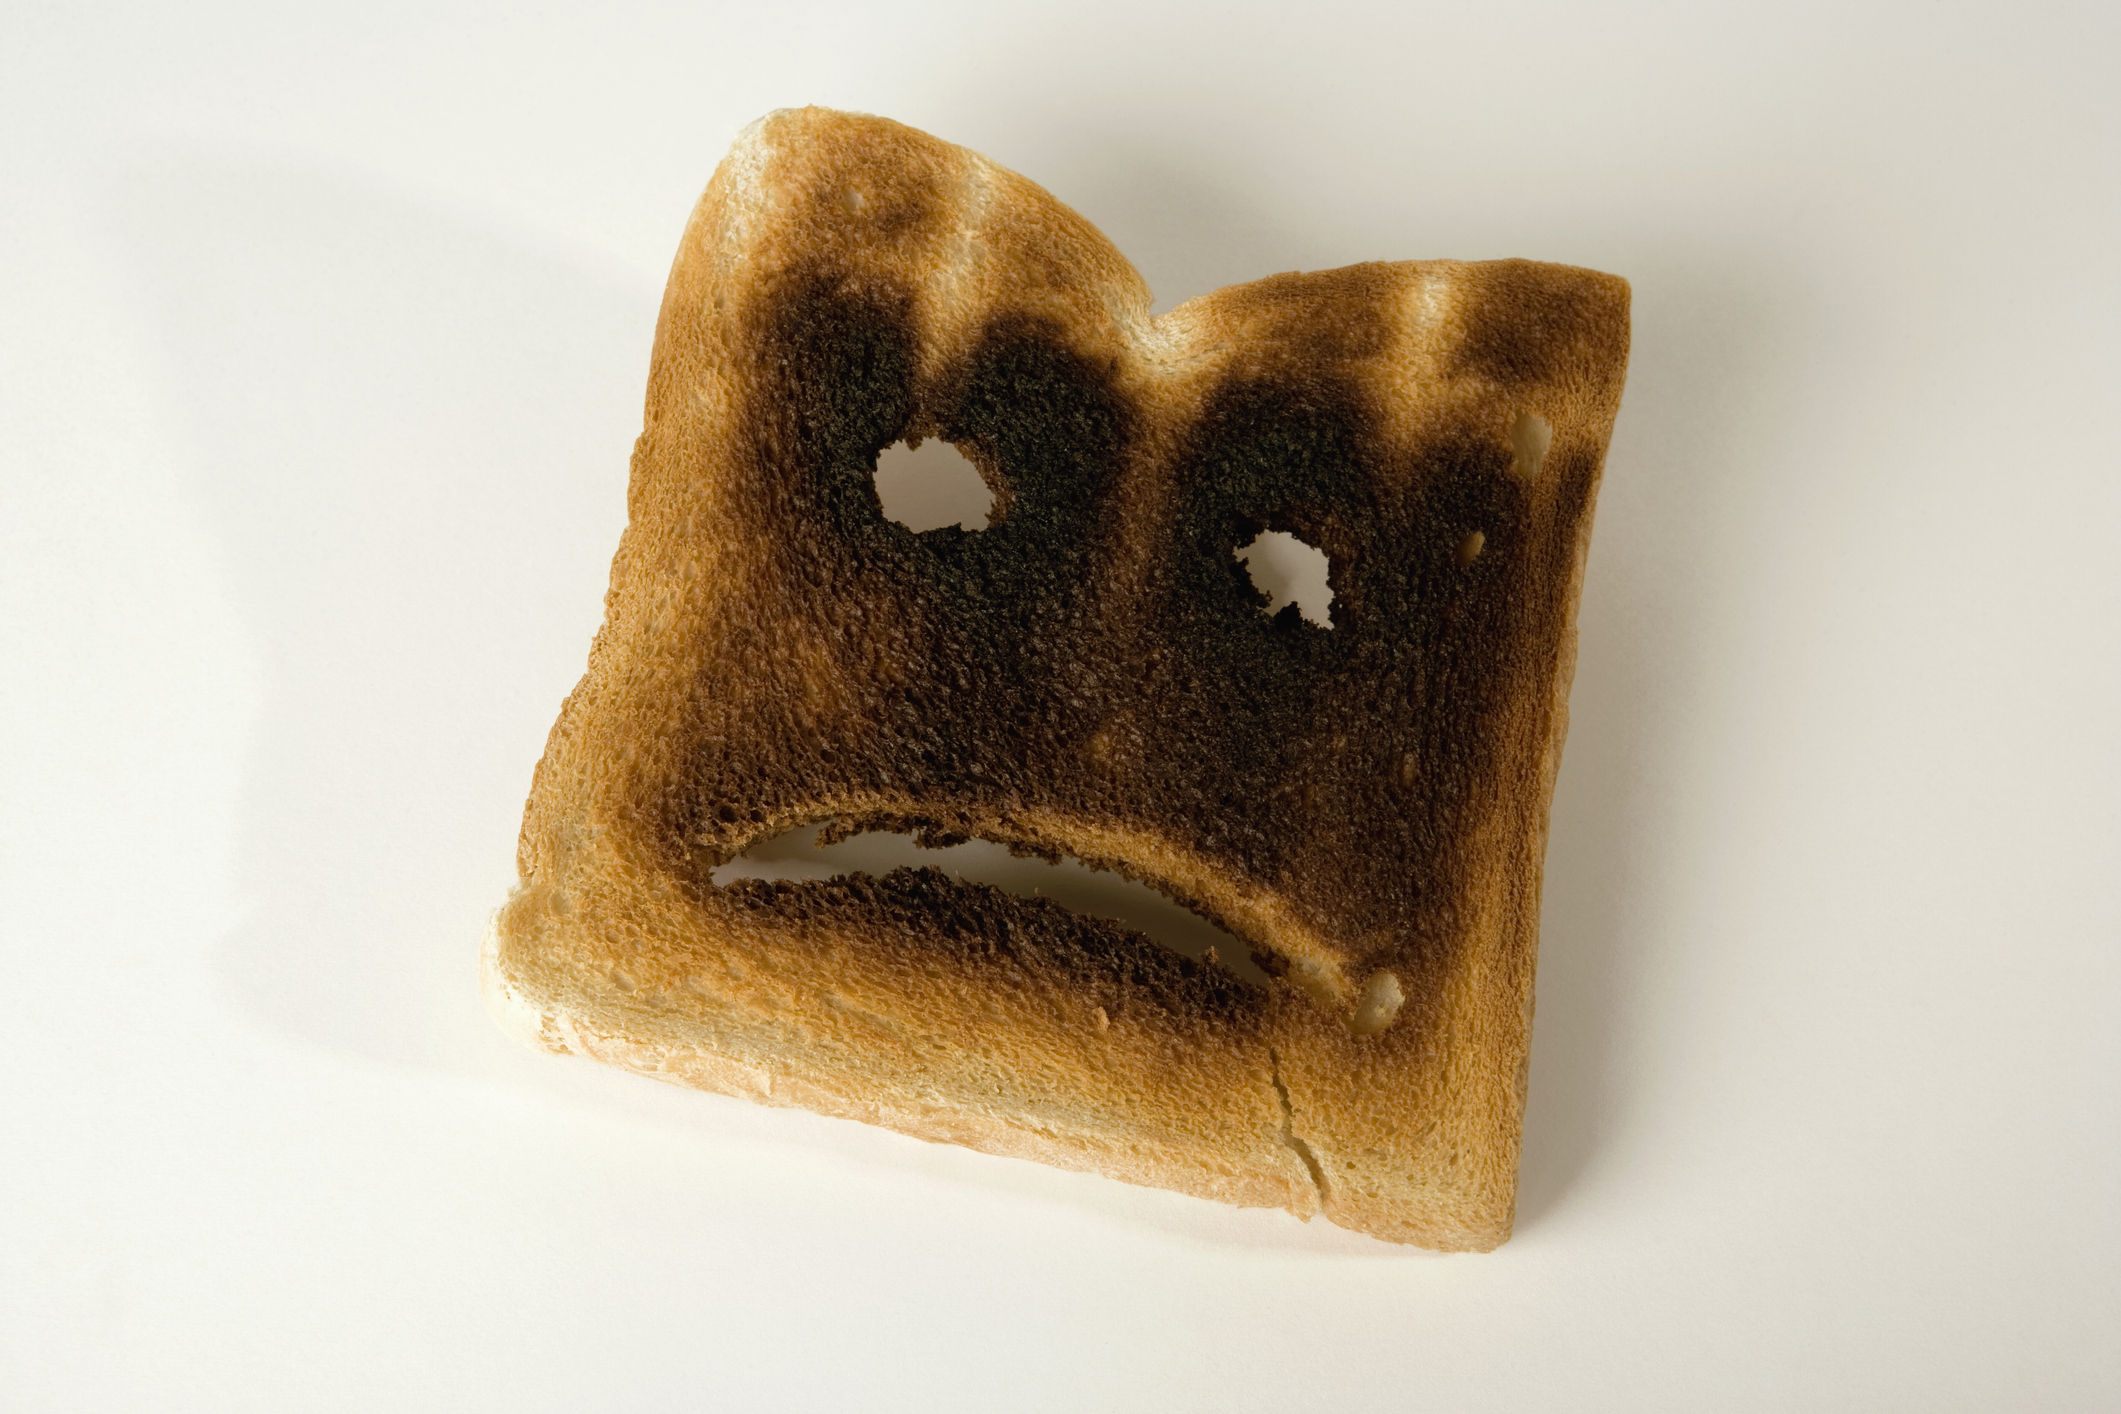 Una rebanada de pan tostado quemado con una cara triste;  errores en derecho laboral